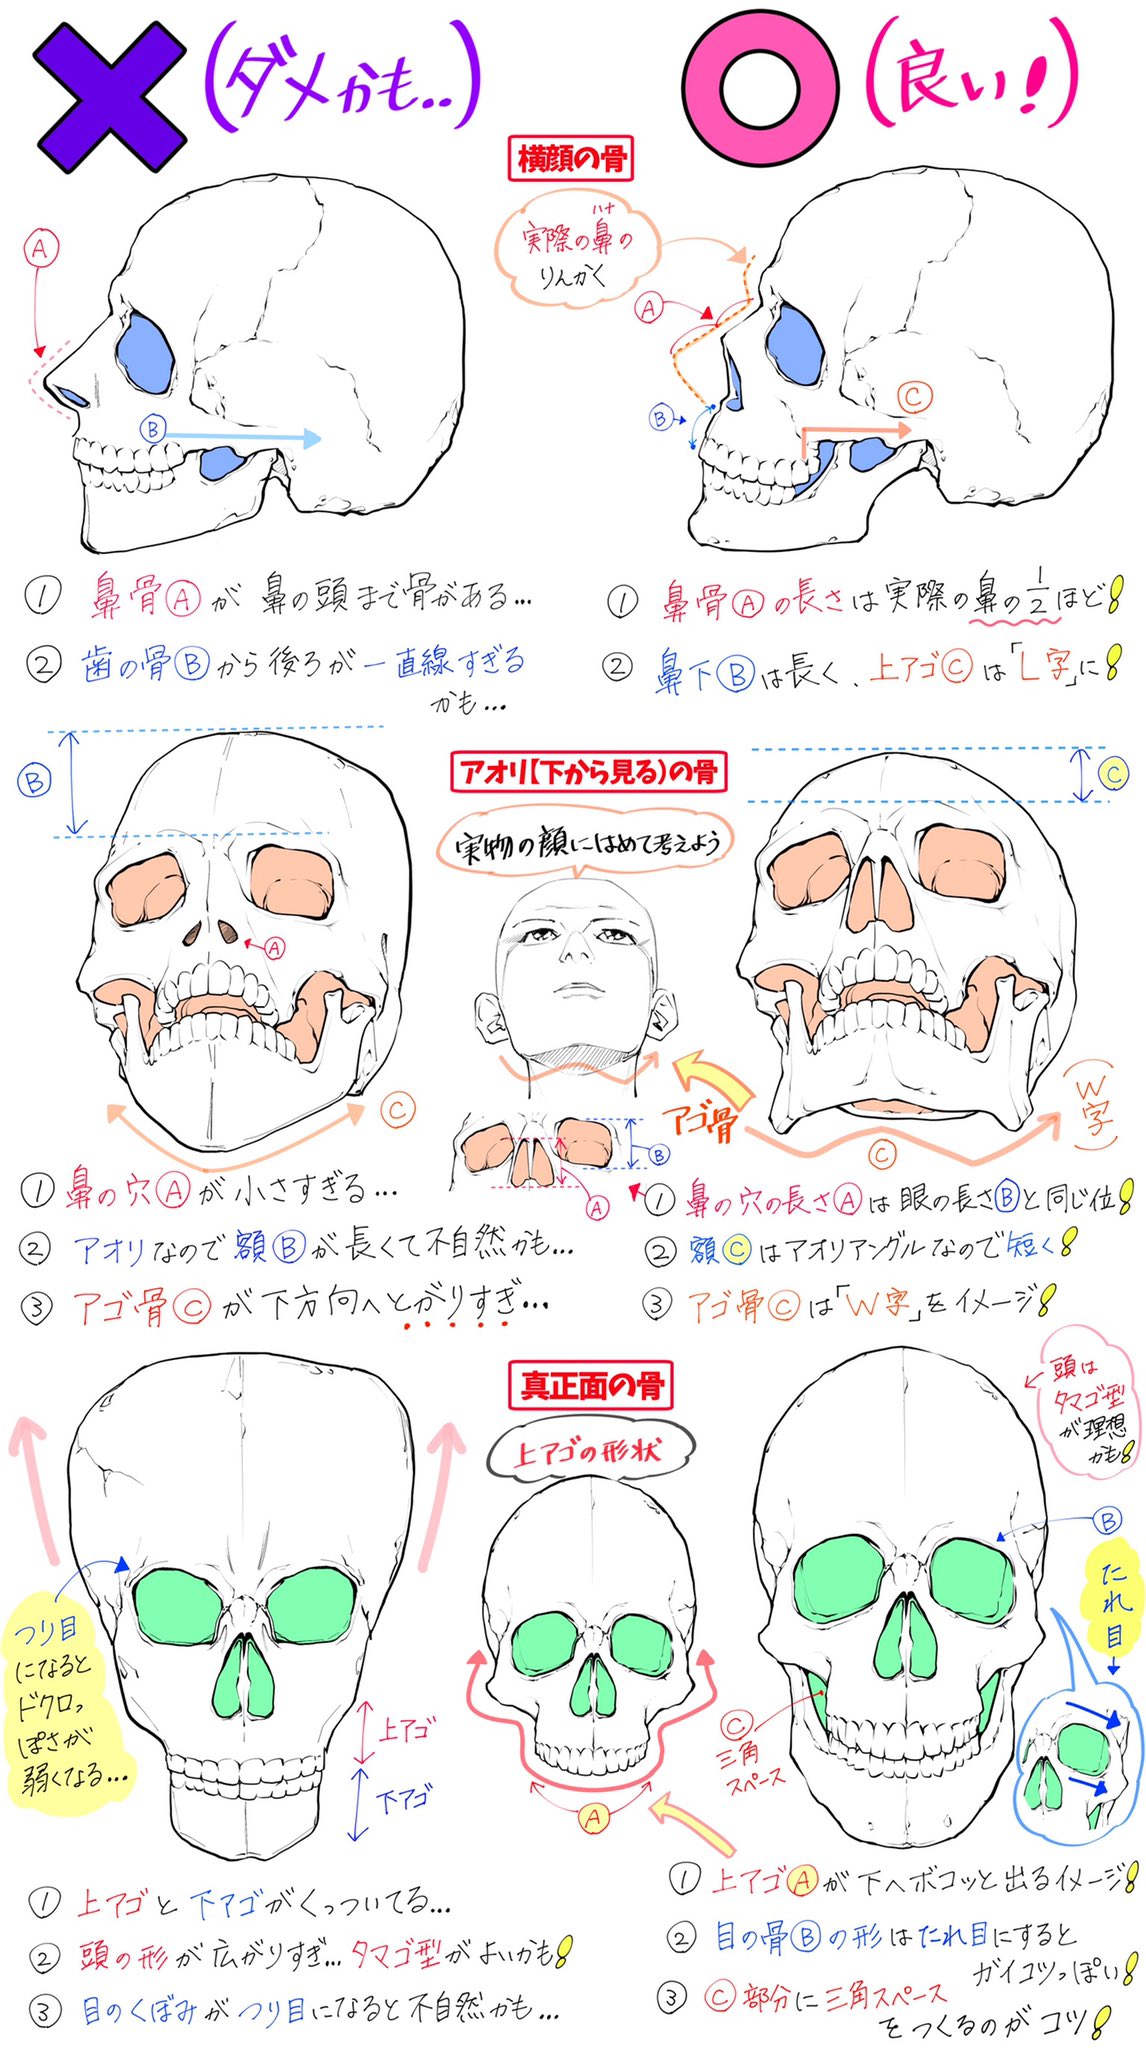 吉村拓也 イラスト講座 Su Twitter 骸骨の描き方 骨の角度やドクロ絵 が上達する ダメかも と 良いかも